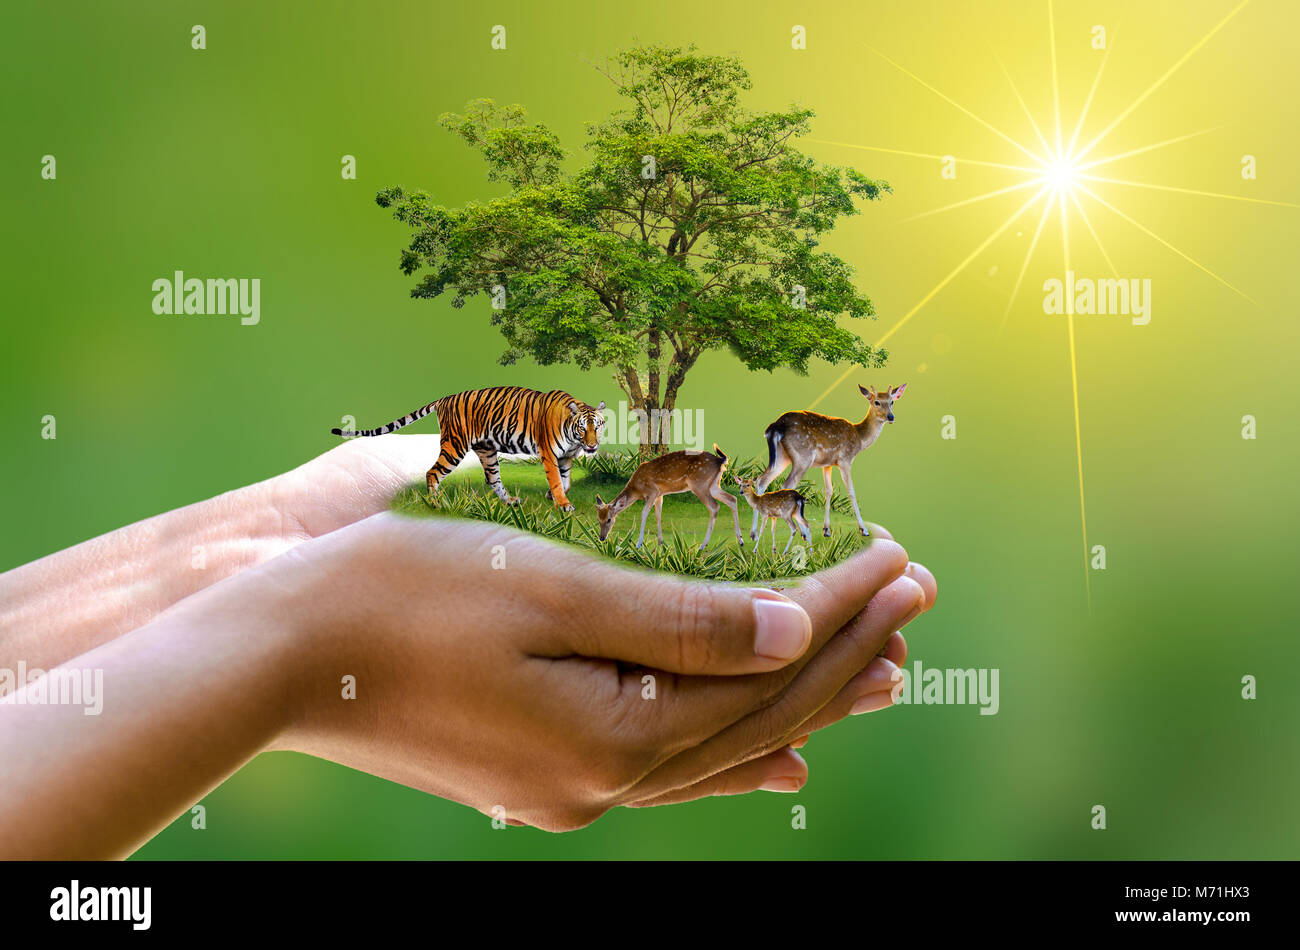 Konzept Naturschutzgebiet schonen Wildlife Reserve tiger Reh globale Erwärmung Food Loaf Ökologie menschliche Hände zum Schutz der wild- und wilde Tiere Tiger d Stockfoto